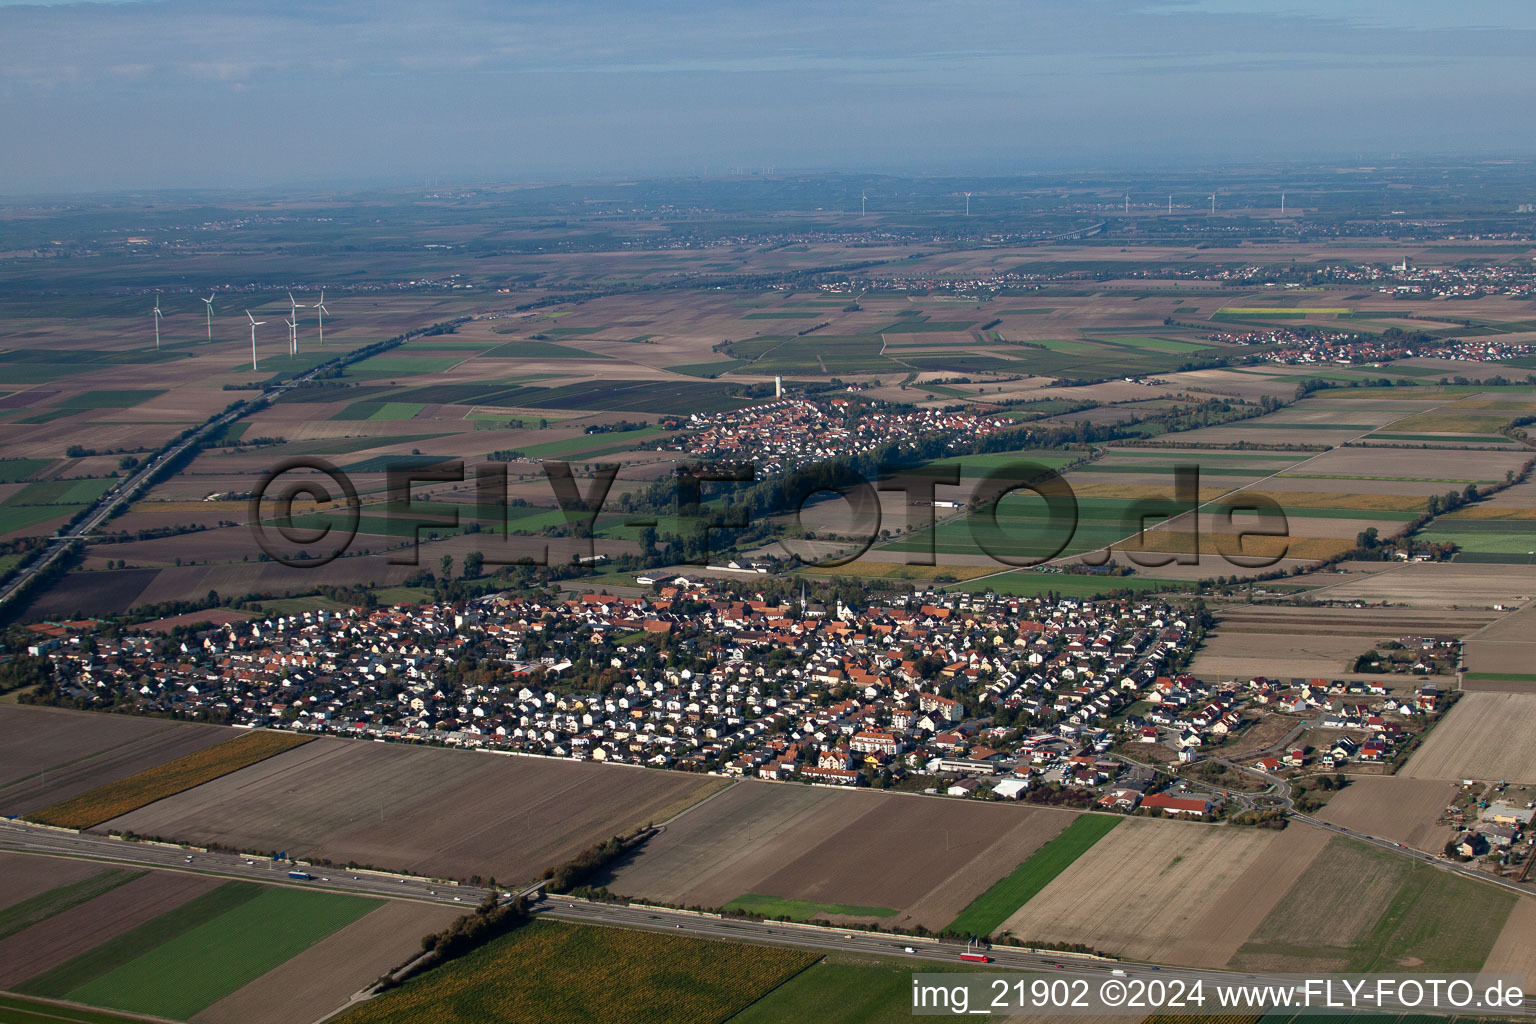 Village view in Beindersheim in the state Rhineland-Palatinate